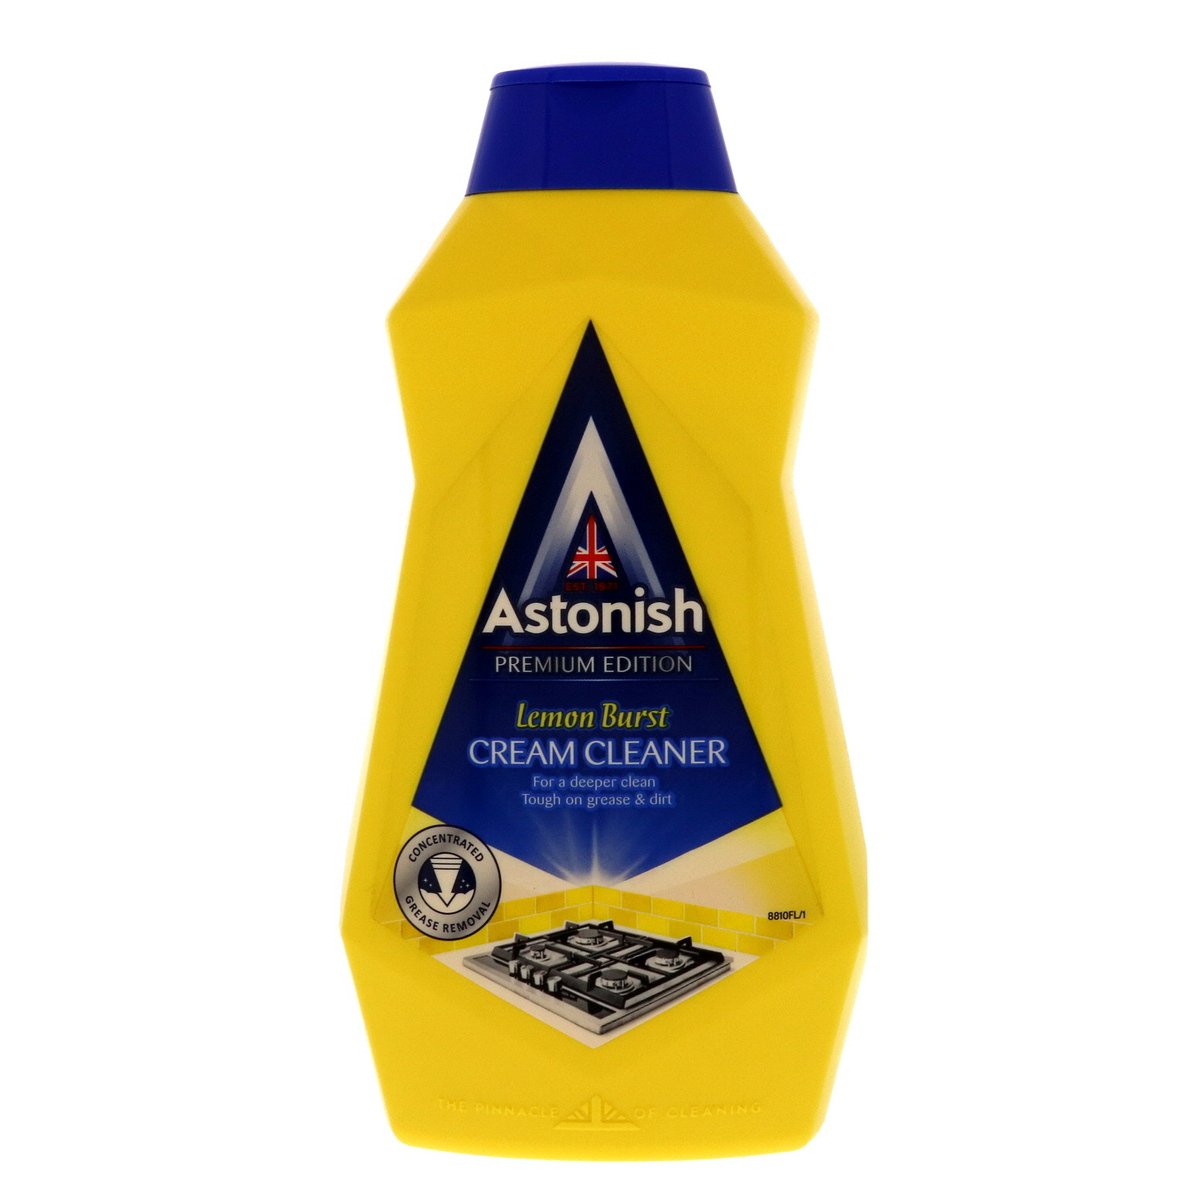 Astonish Cream Cleaner Lemon Burst 500ml